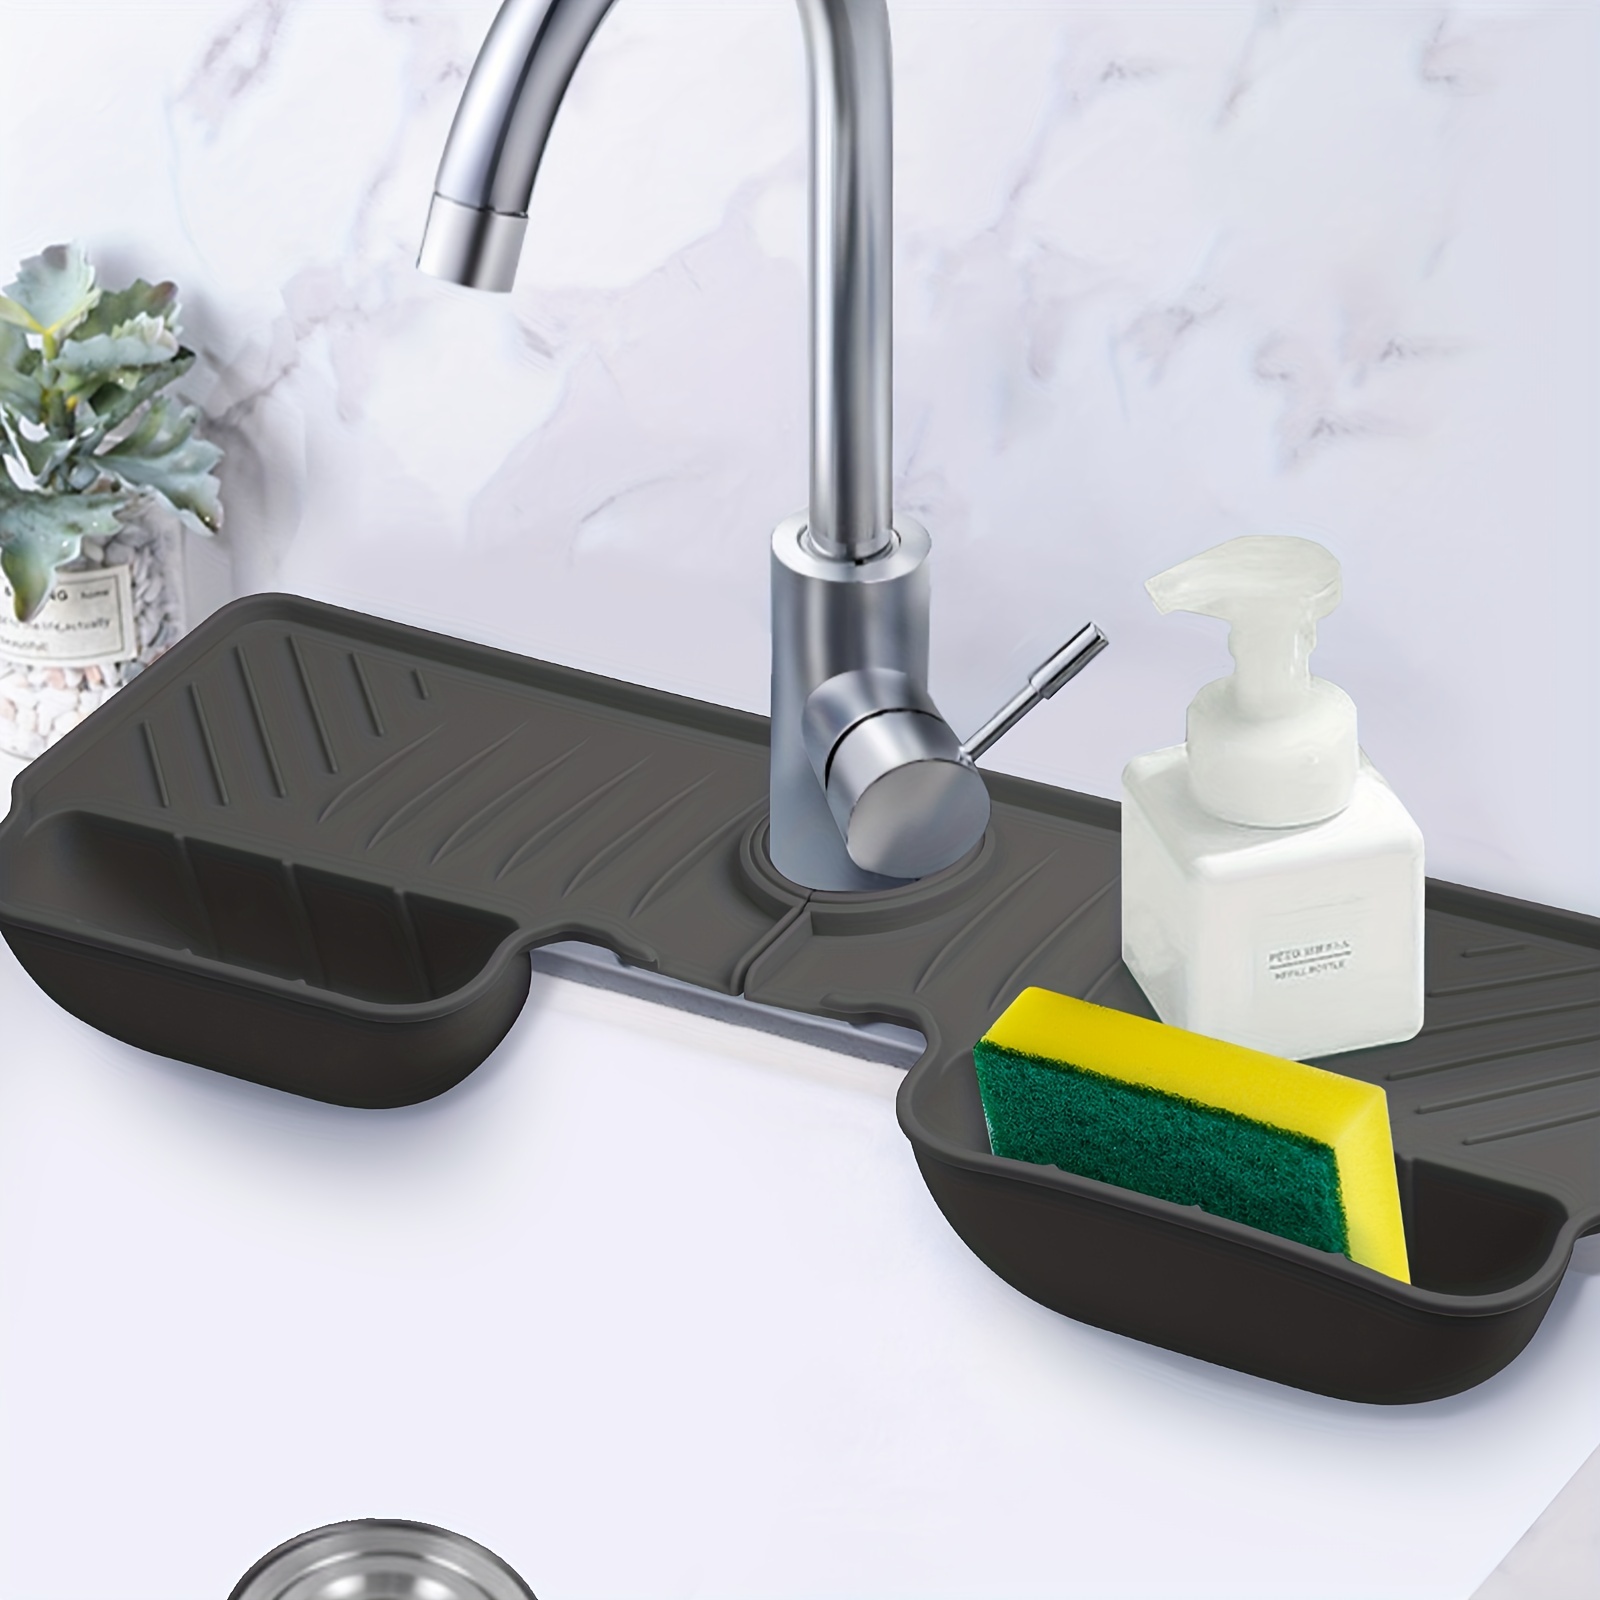 Zulay Kitchen Silicone Sponge Holder for Kitchen Sink - Bed Bath